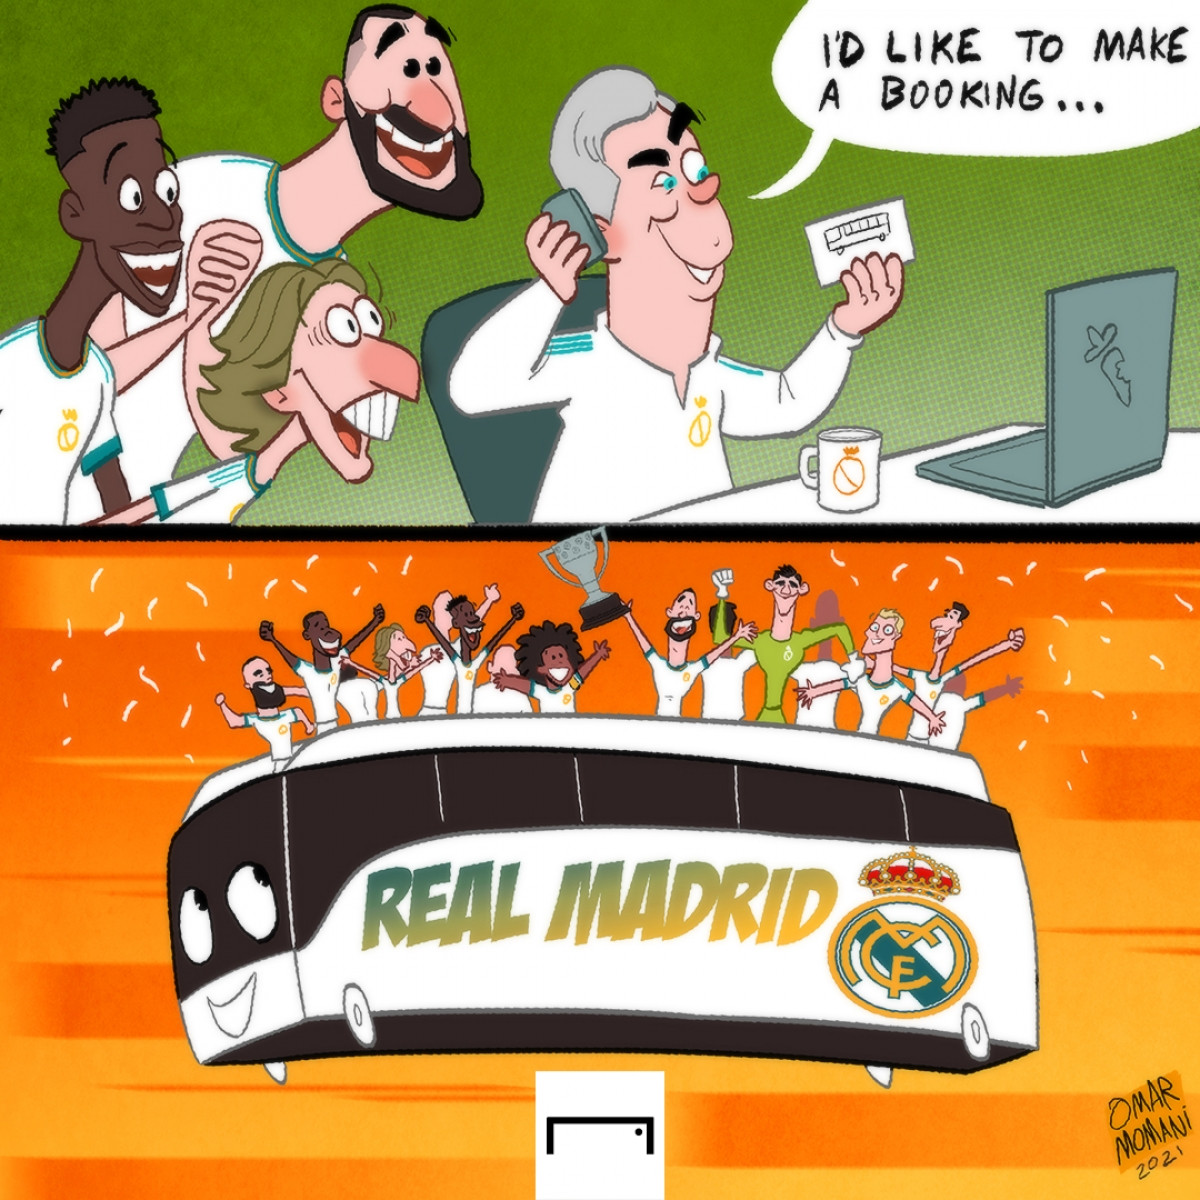 Real Madrid đang không có đối thủ ở La Liga mùa này. (Ảnh: Omar Momani)